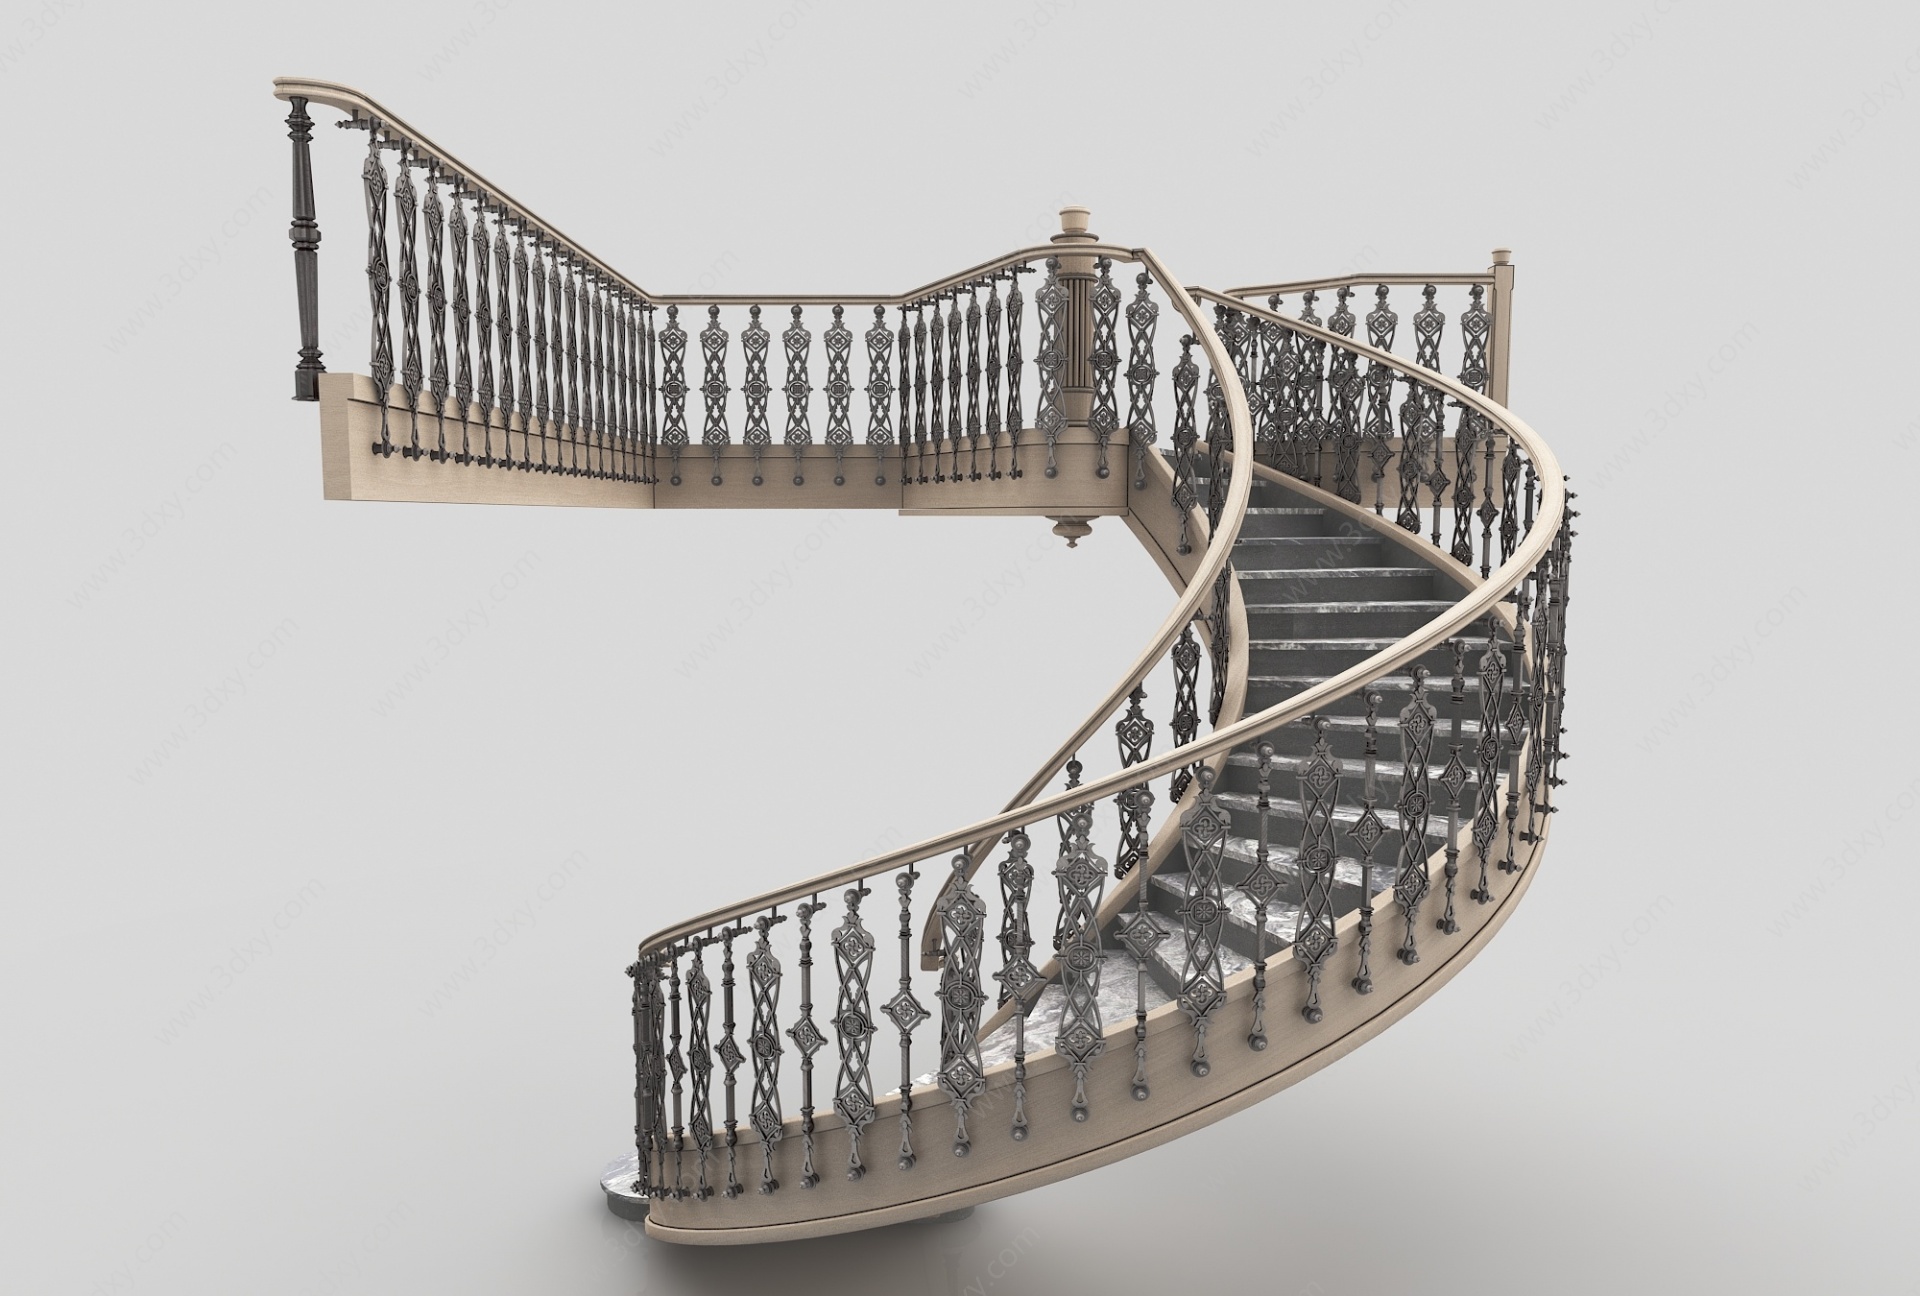 现代风格楼梯3D模型